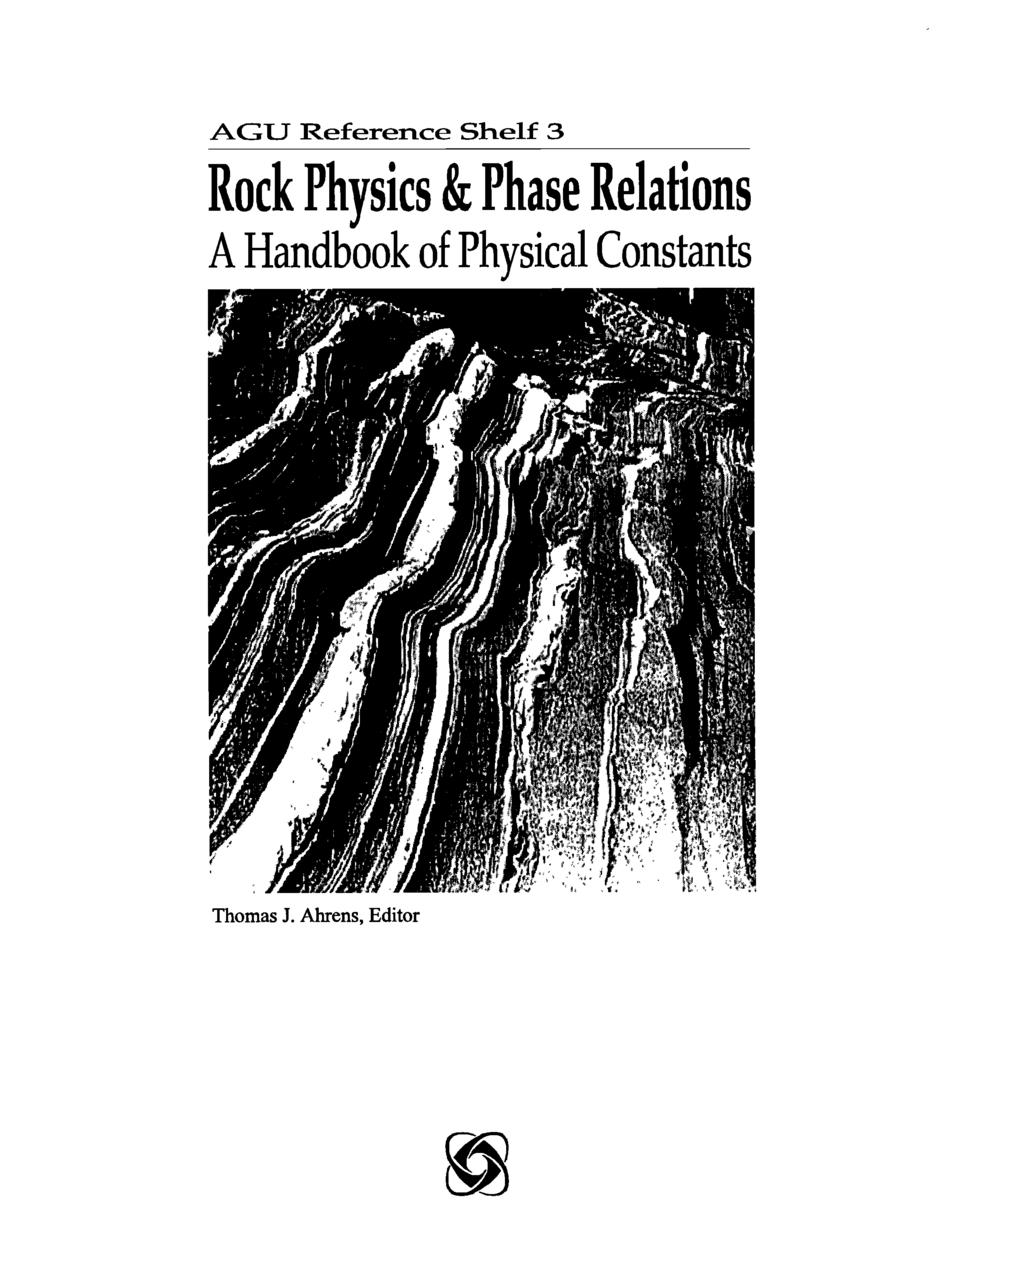 AGU Reference Shelf 3 Rock Physics & Phase